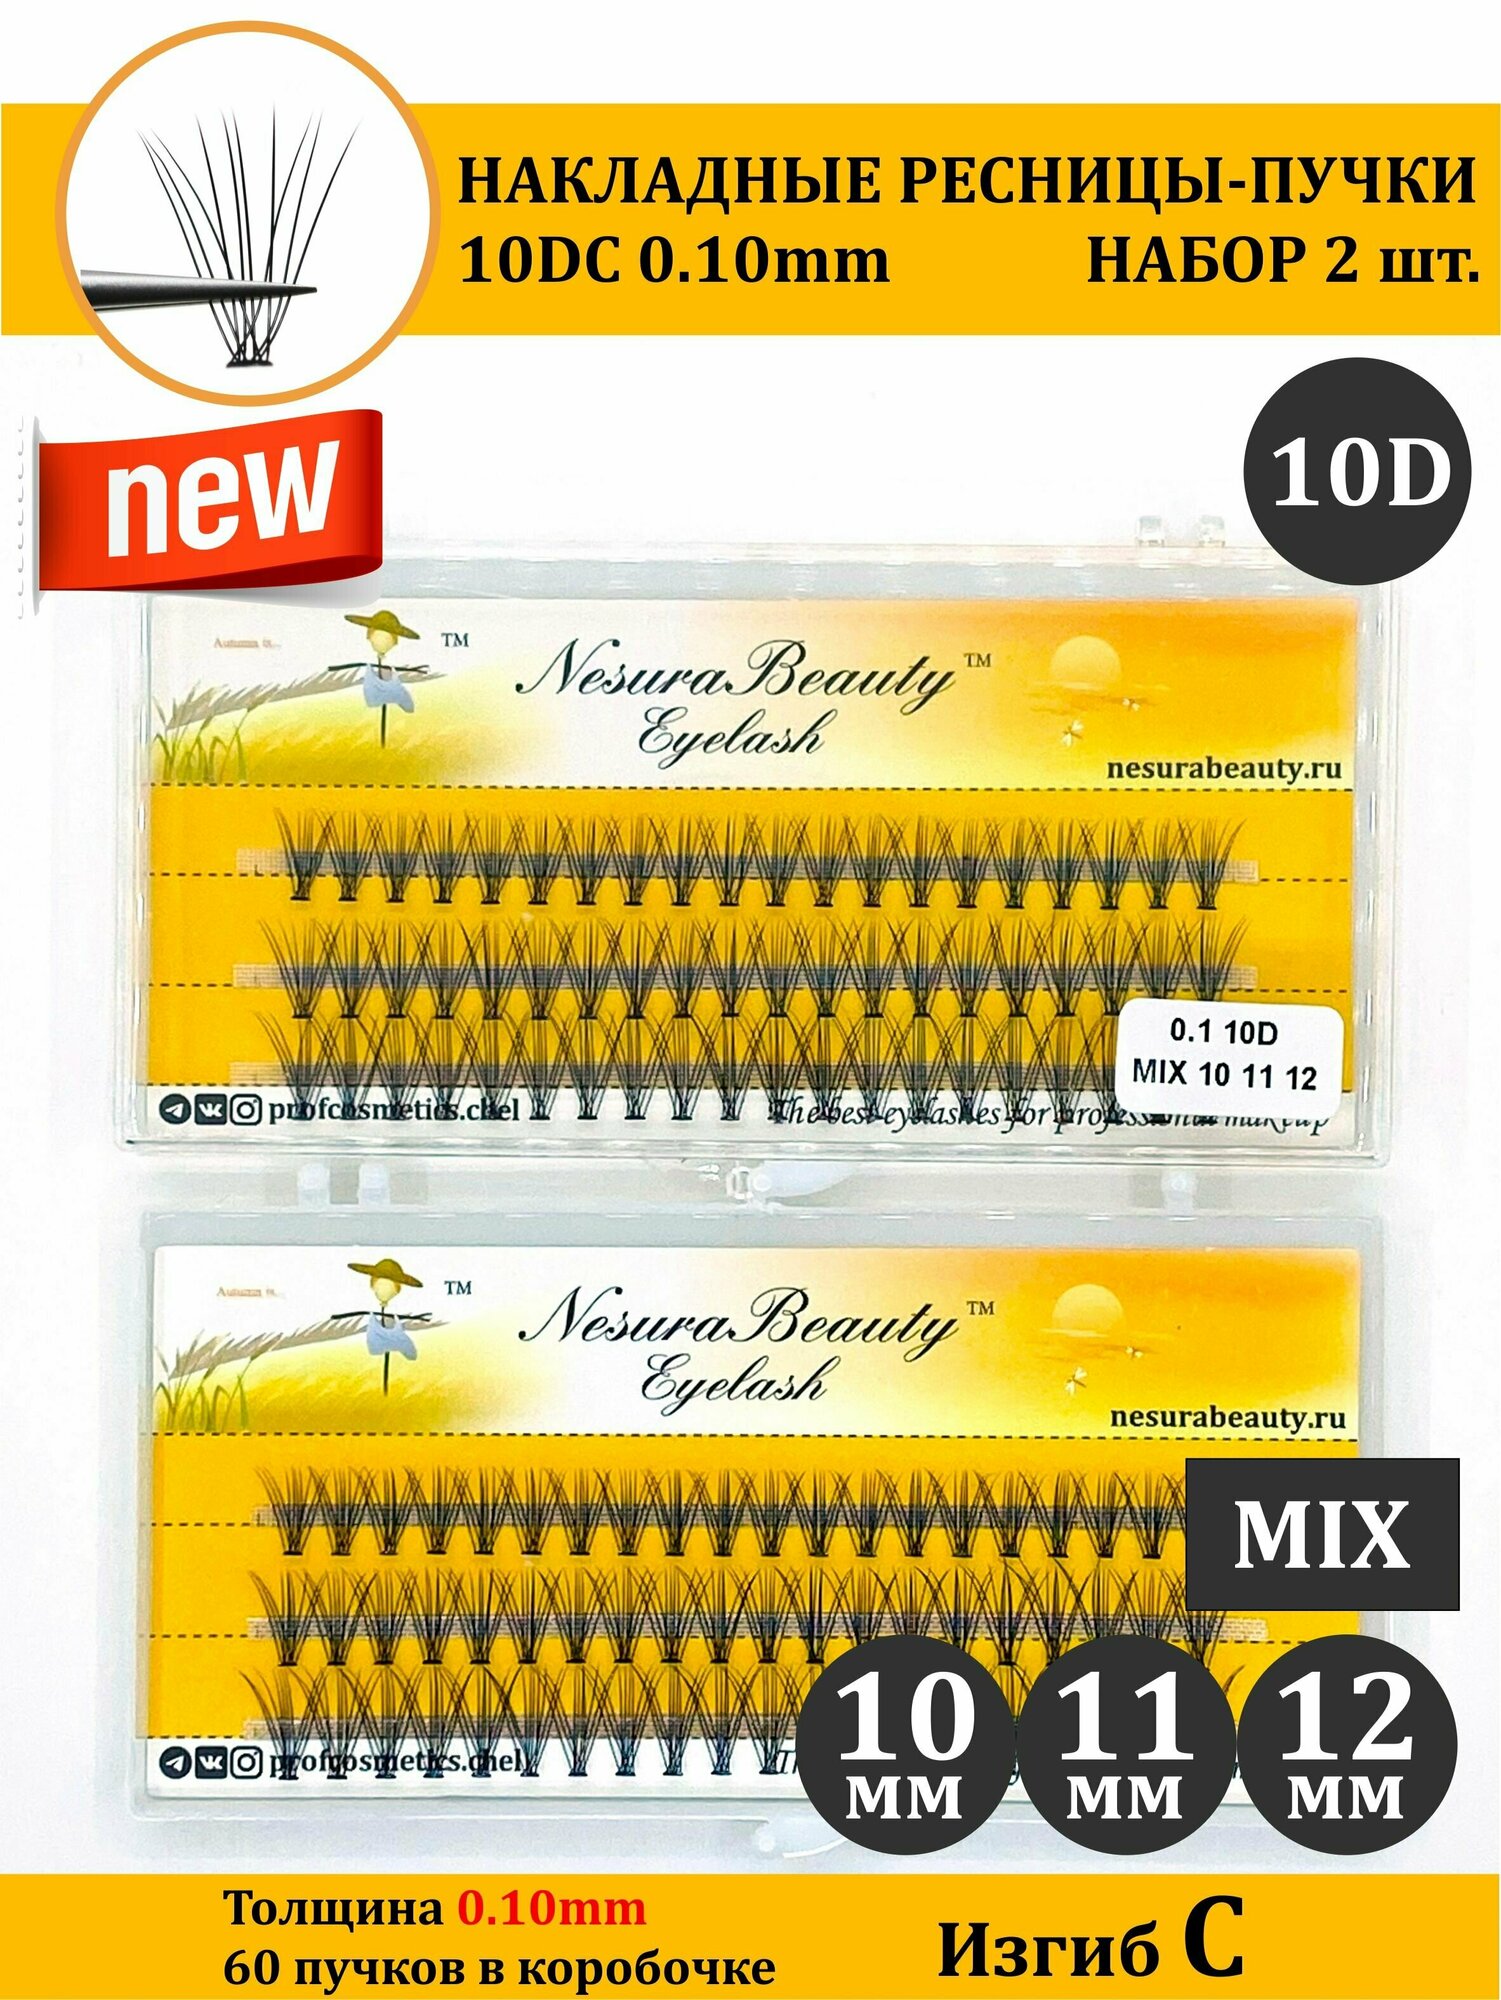 NesuraBeauty / 10D / Накладные пучки ресниц / Набор 2шт / MIX 10 11 12 мм, 0.1, изгиб С 10Д / для макияжа и визажиста